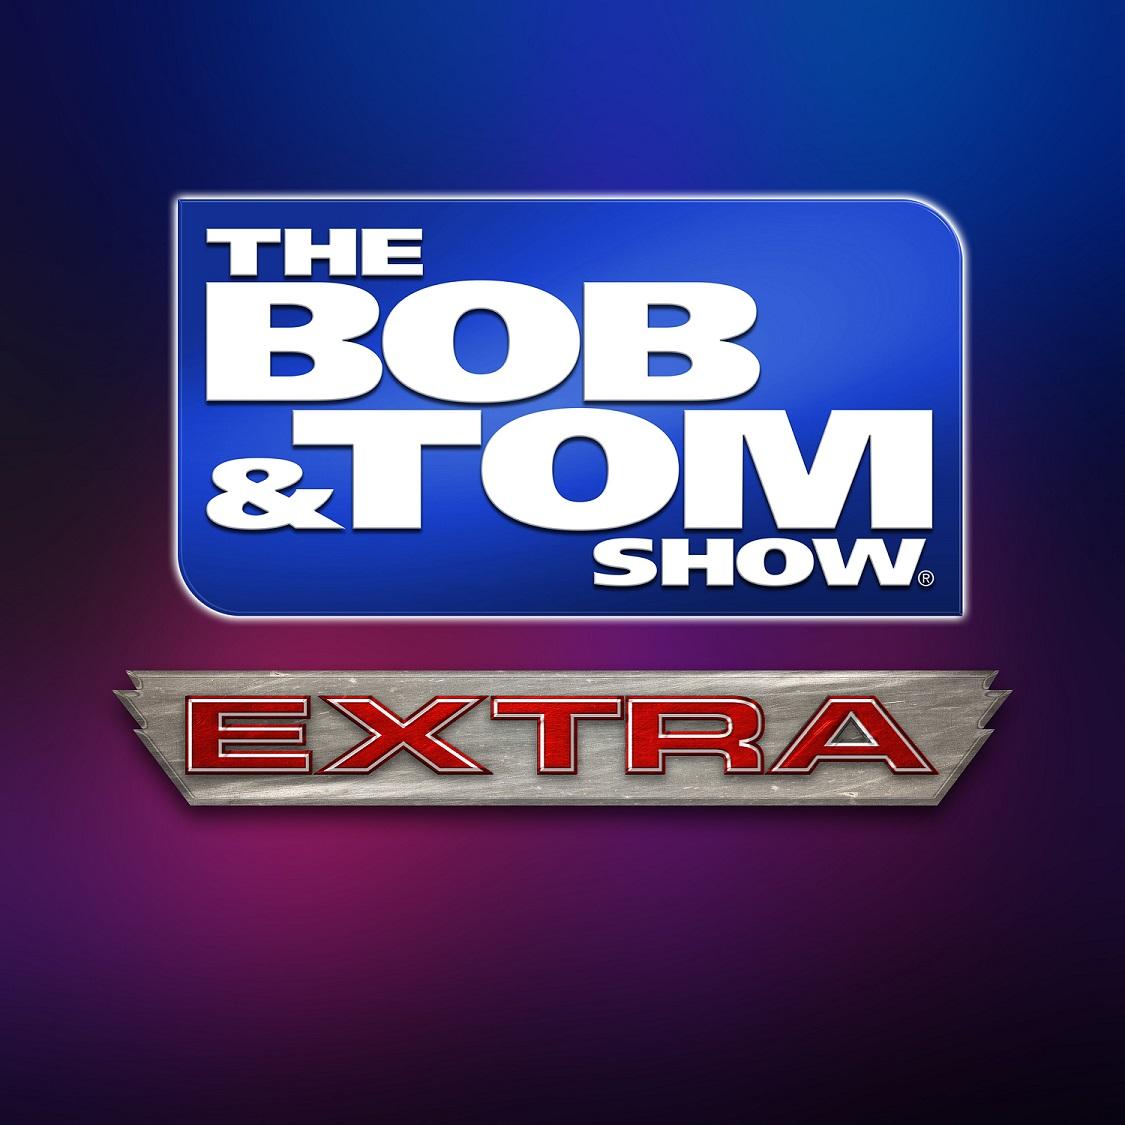 The Bob & Tom Show